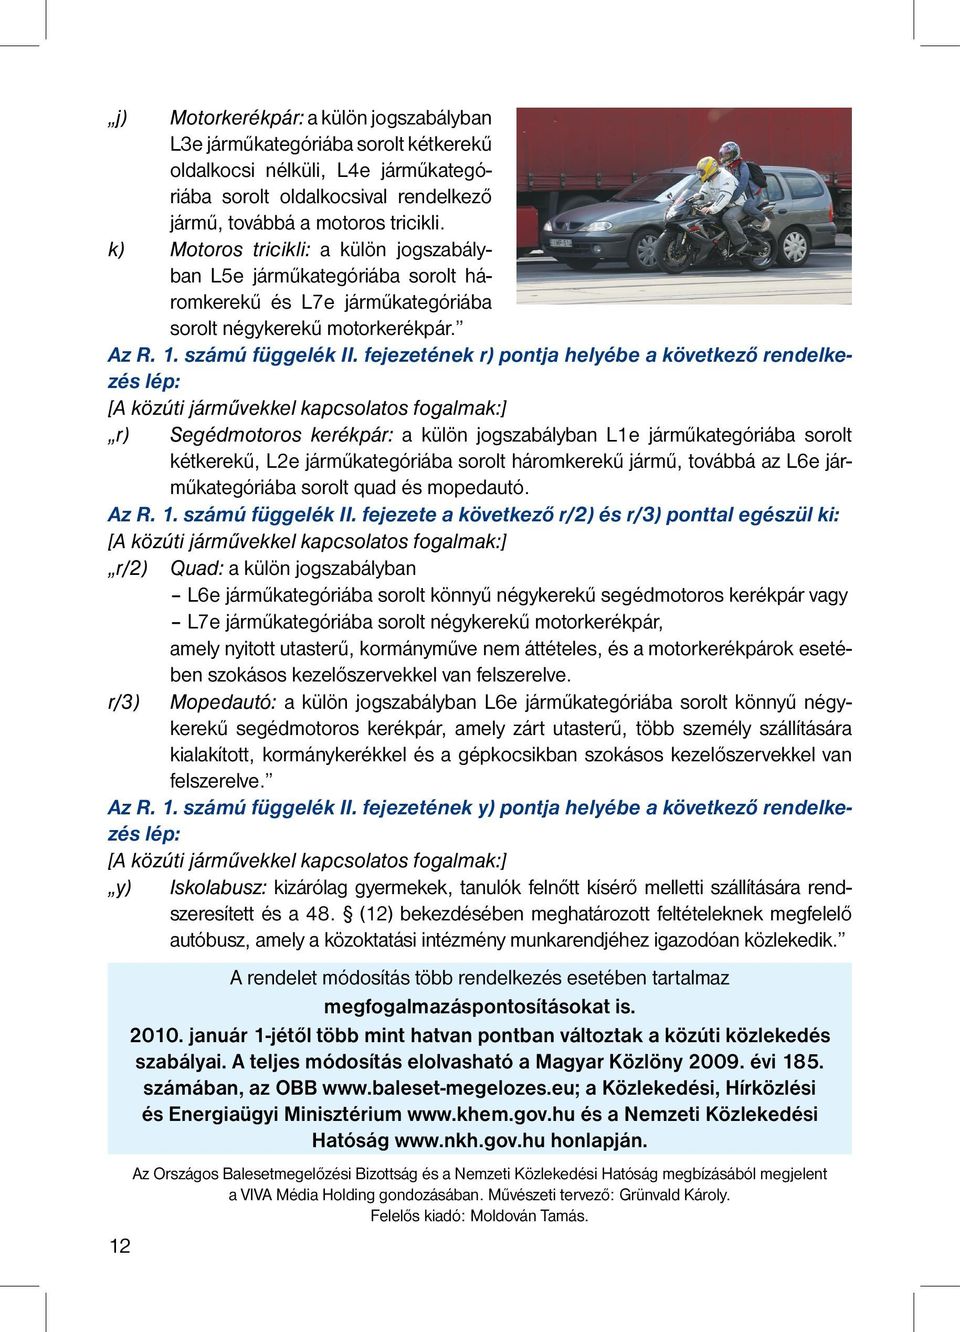 fejezetének r) pontja helyébe a következő rendelkezés lép: [A közúti járművekkel kapcsolatos fogalmak:] r) Segédmotoros kerékpár: a külön jogszabályban L1e járműkategóriába sorolt kétkerekű, L2e